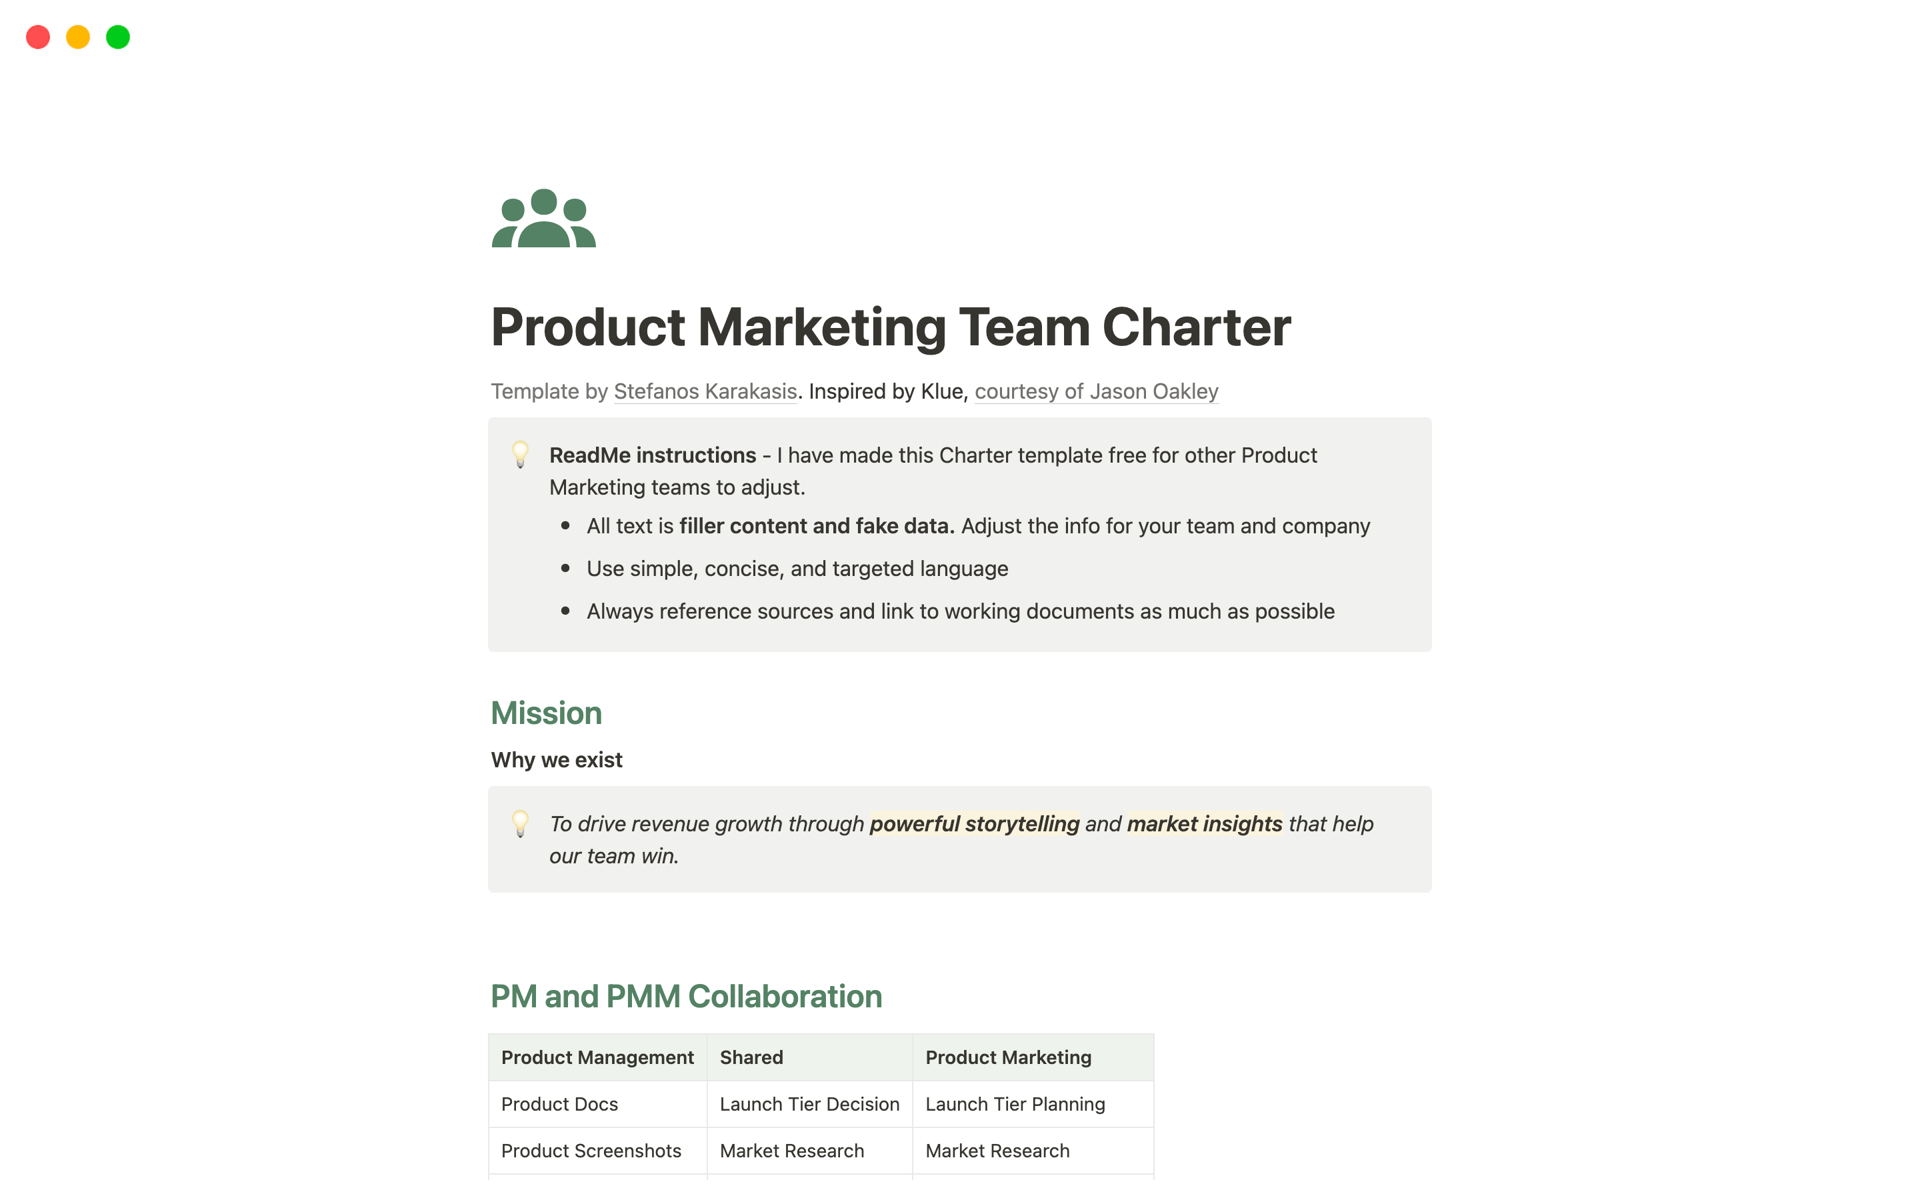 Uma prévia do modelo para Product Marketing Team Charter